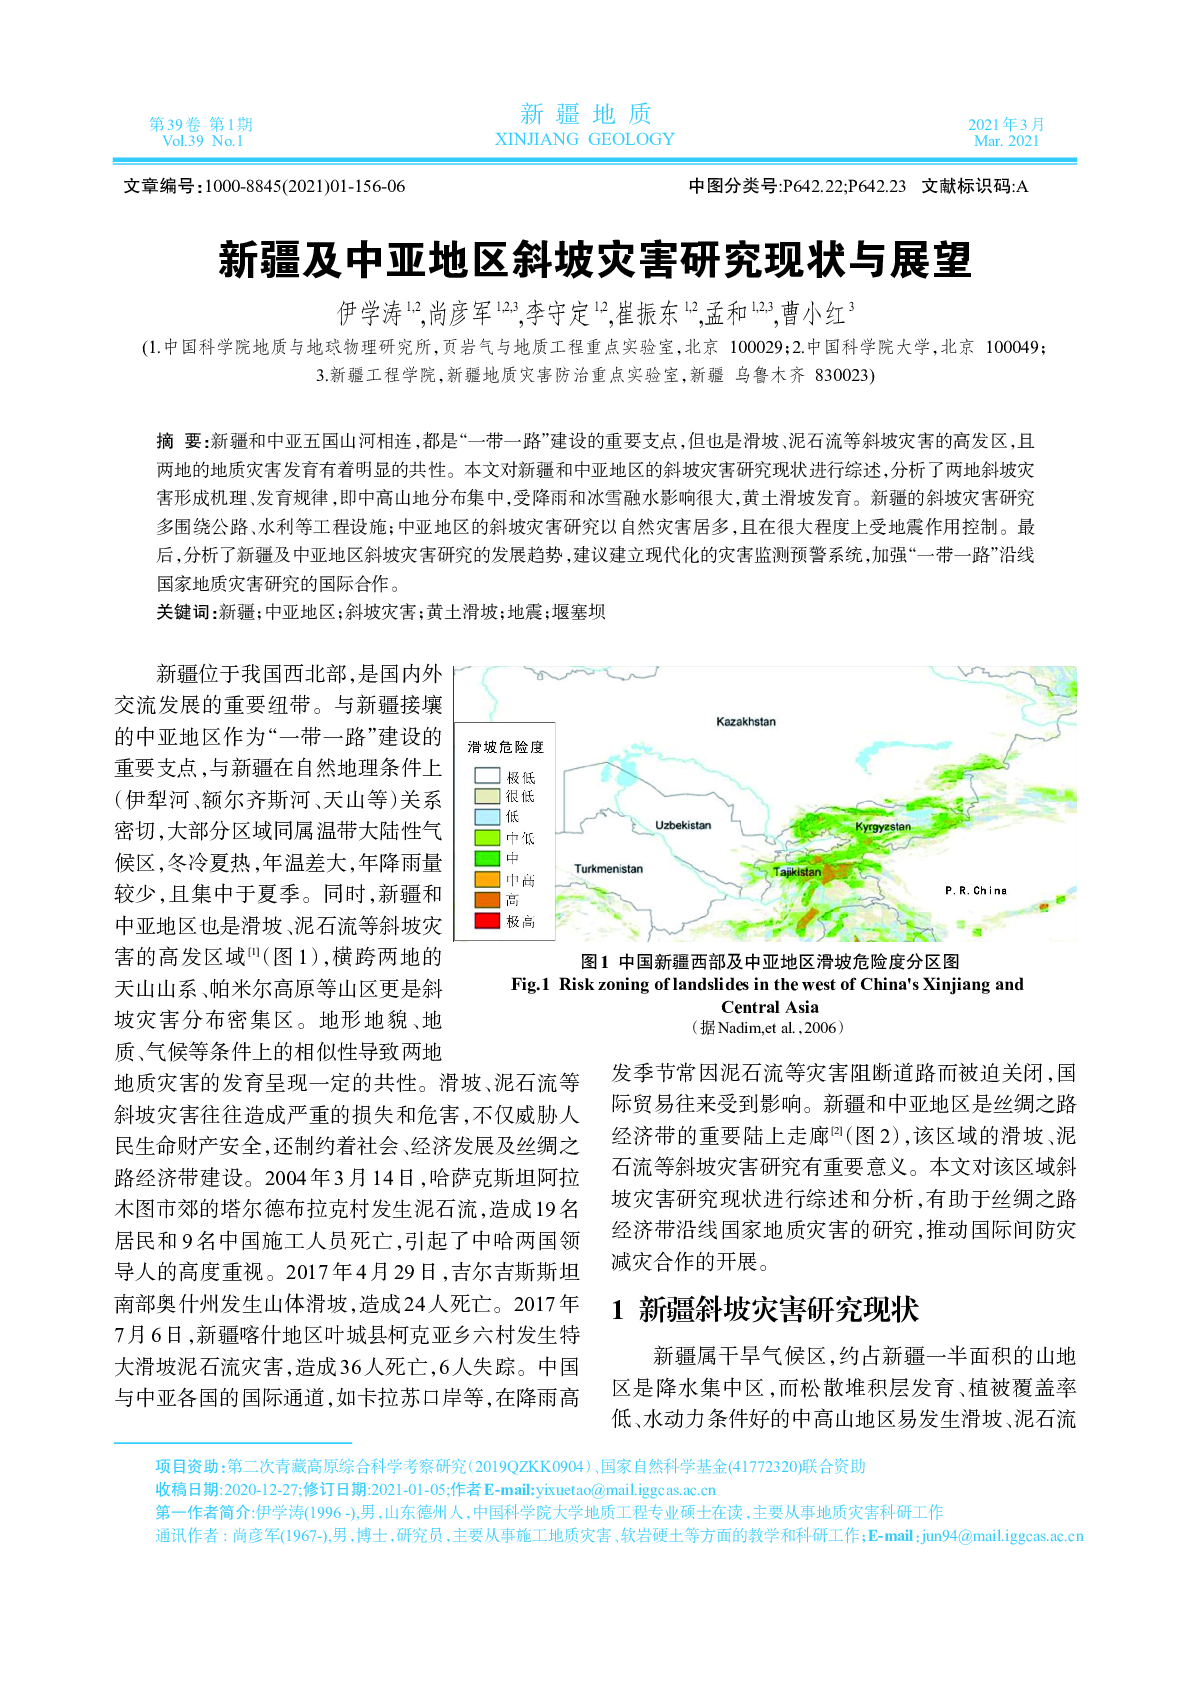 新疆及中亚地区斜坡灾害研究现状与展望